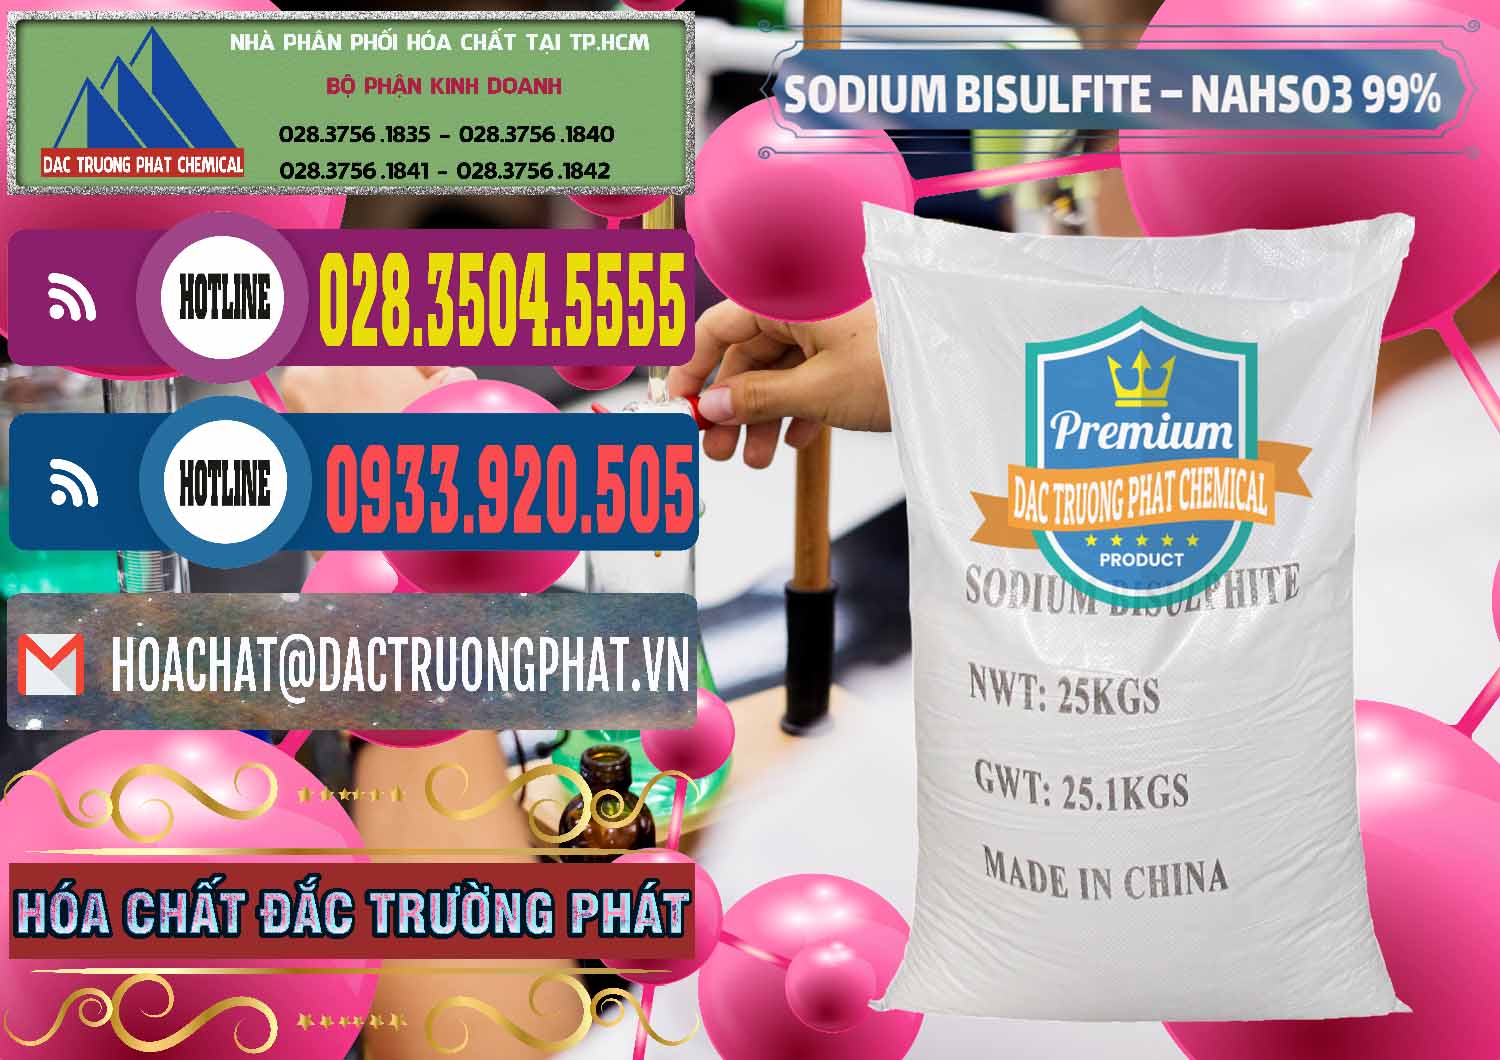 Đơn vị chuyên nhập khẩu và bán Sodium Bisulfite – NAHSO3 Trung Quốc China - 0140 - Chuyên cung cấp và kinh doanh hóa chất tại TP.HCM - muabanhoachat.com.vn